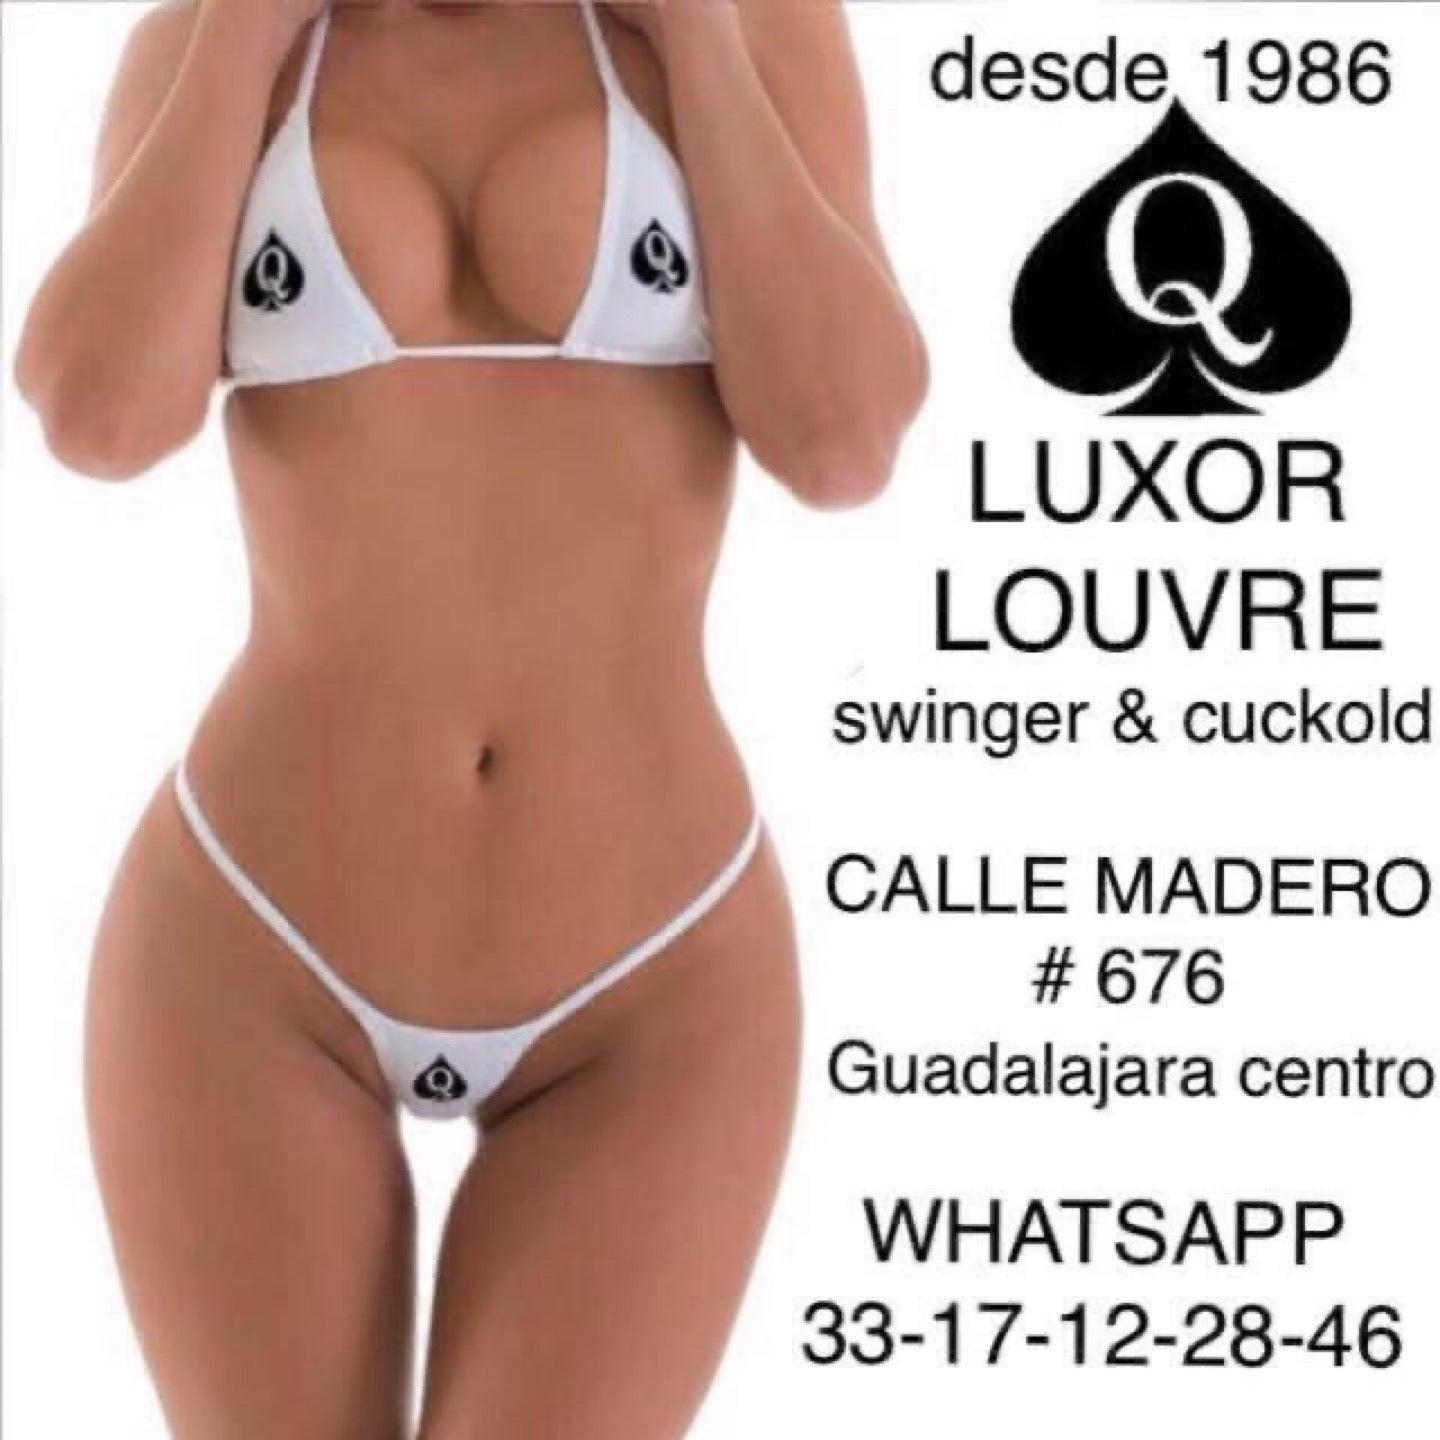 Luxor Louvre Swinger Club y Cuckold Club